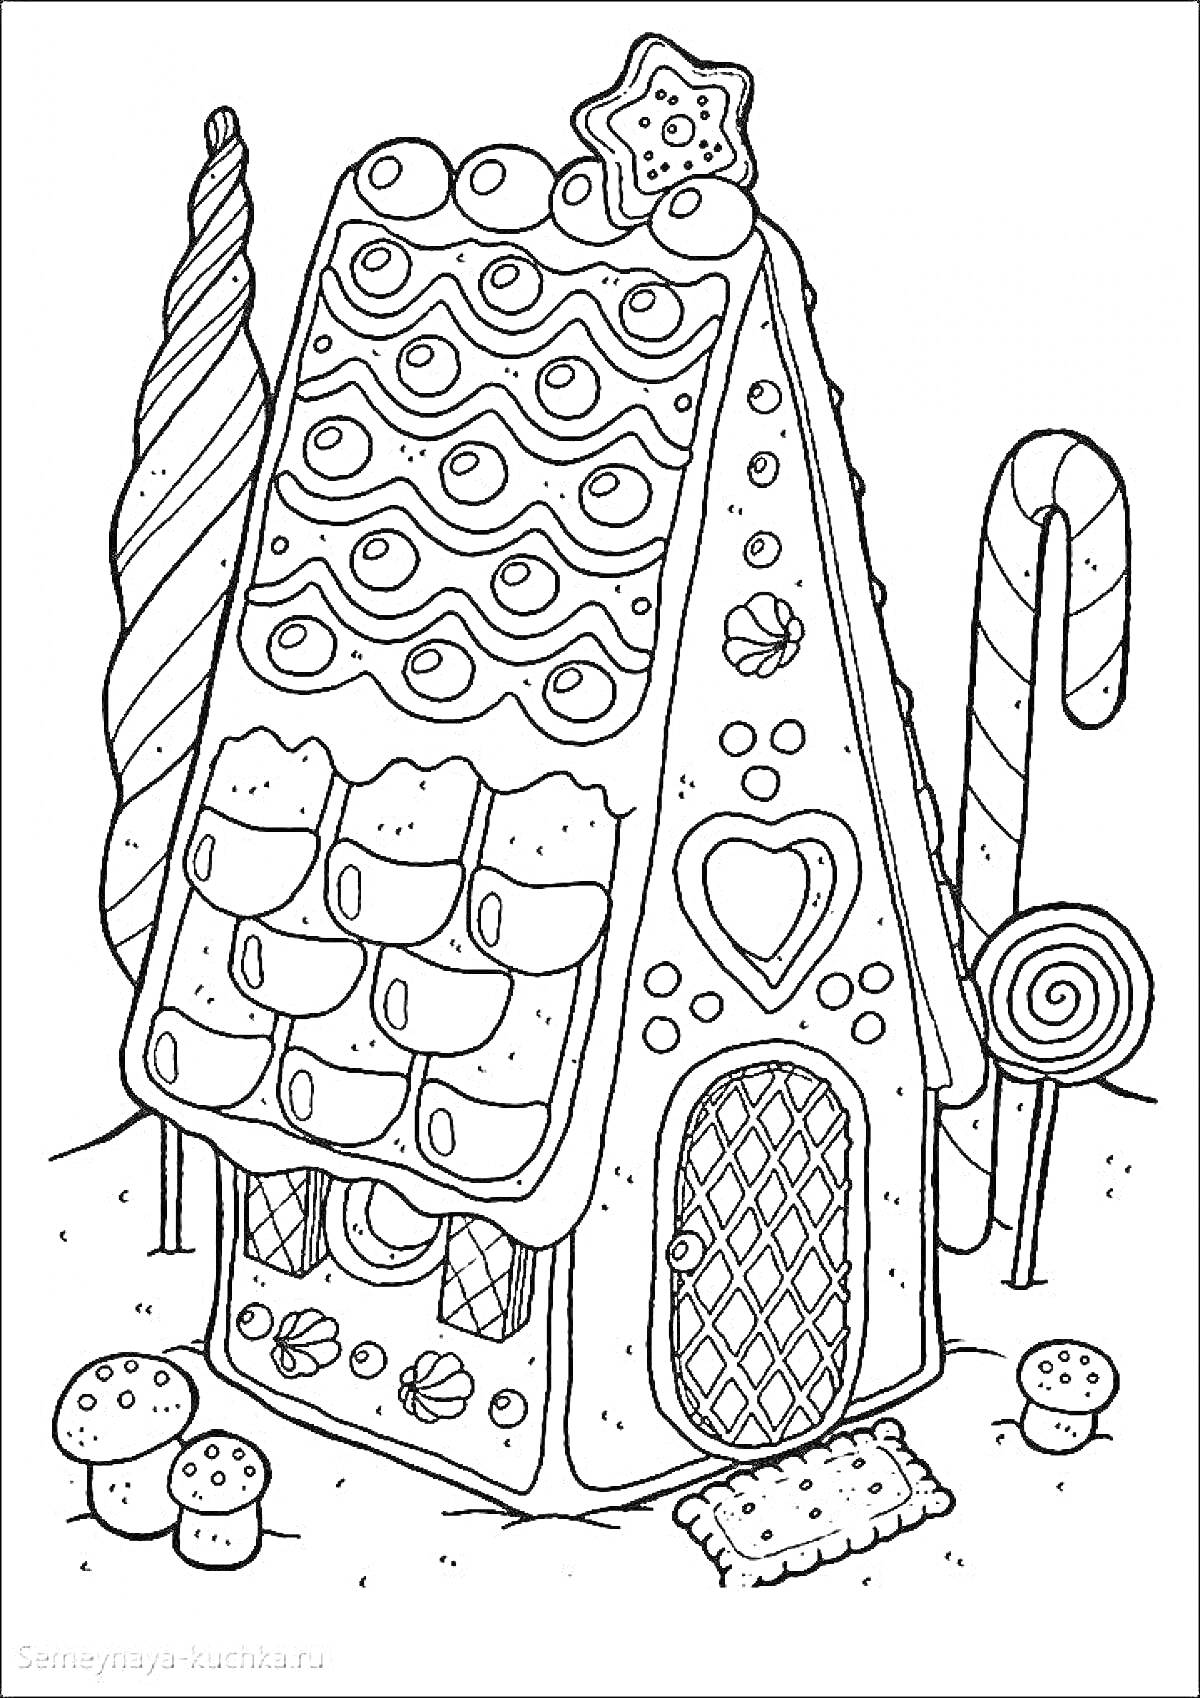 Пряничный домик с дверью и окном, украшенный льдинками, конфетами, пряниками и звездочкой на крыше, рядом с леденцами, деревцами и грибочками